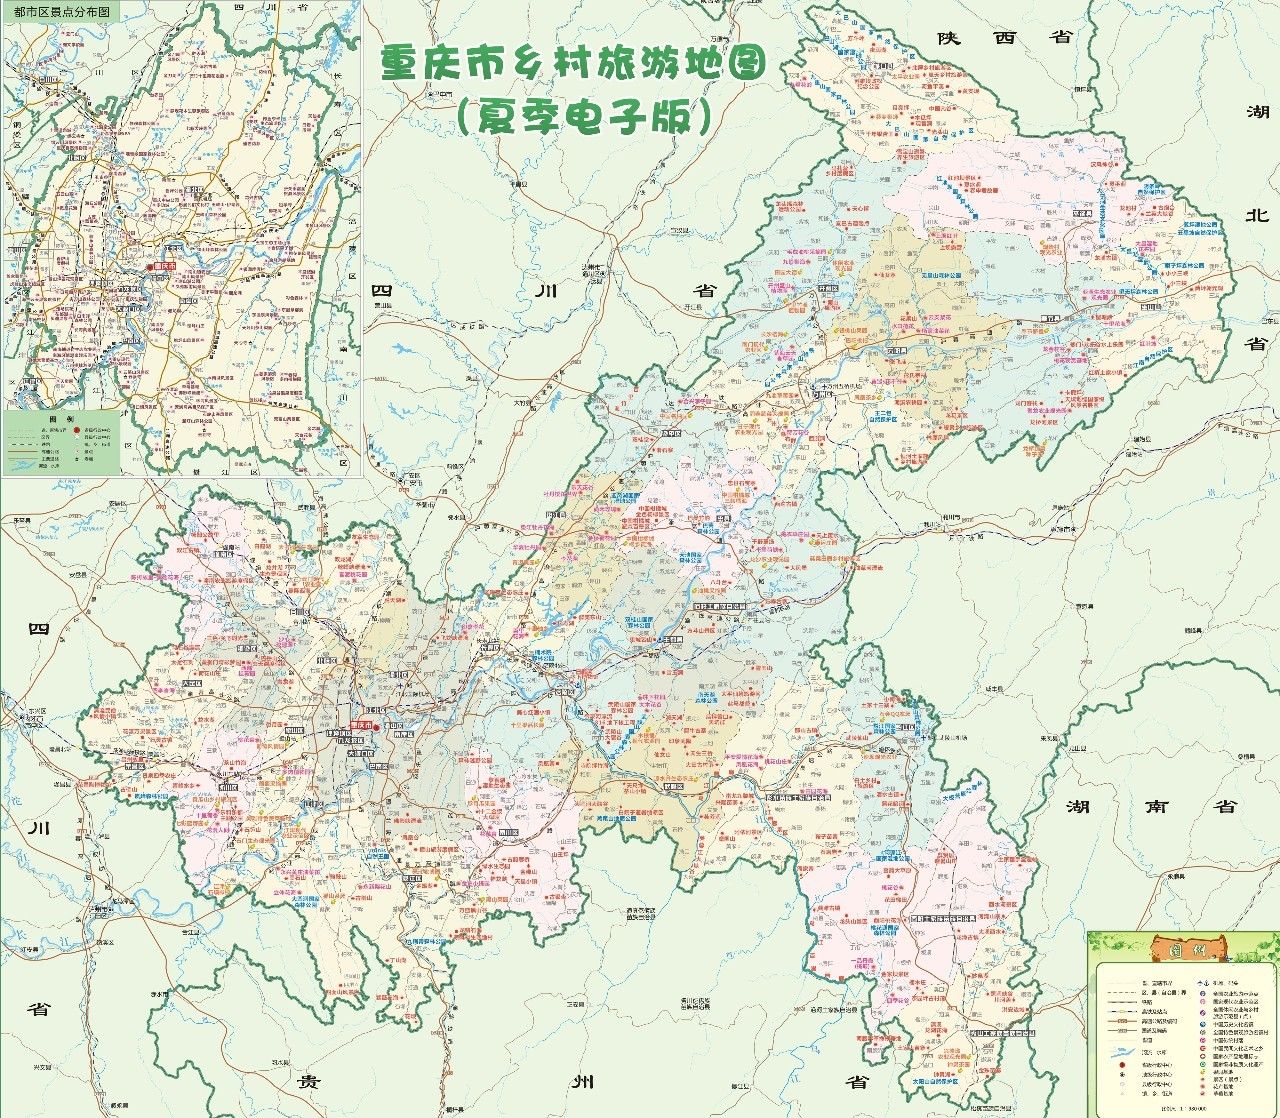 《重庆市乡村旅游地图》新鲜出炉,大长寿惊艳亮相!图片